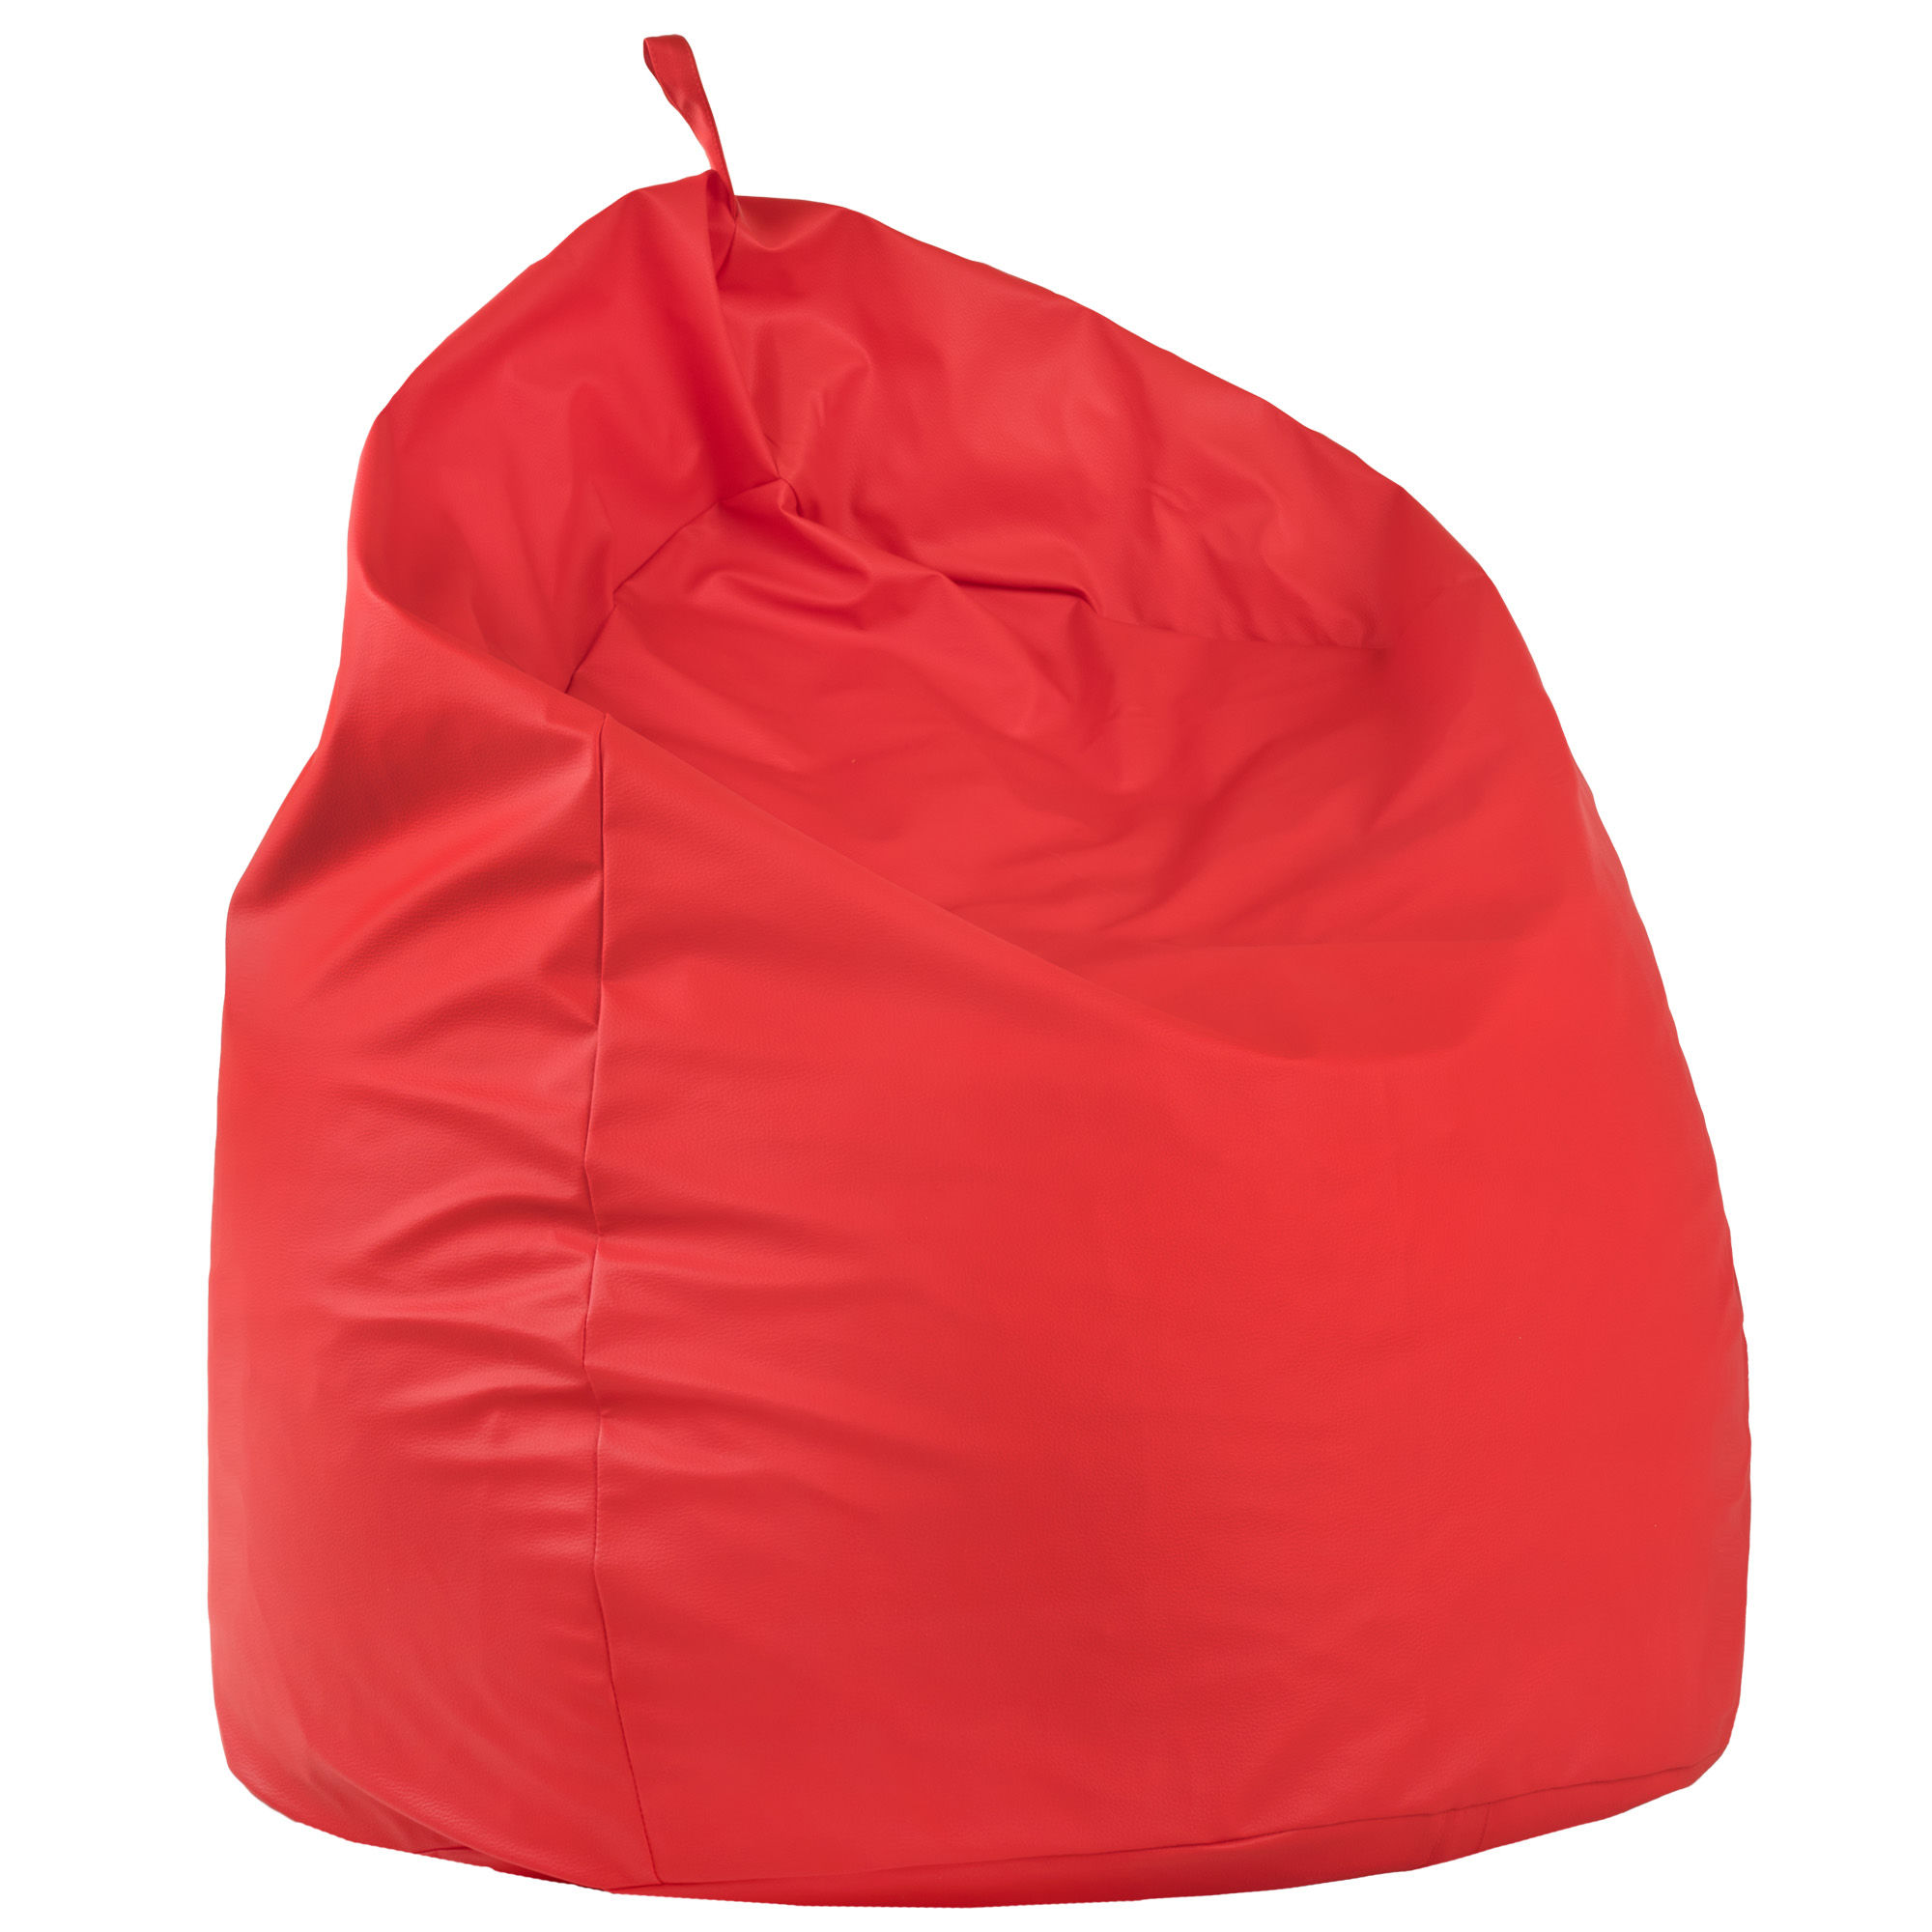 Pouf sacco gigante xxl rosso da soggiorno. Pouf pera salotto moderno